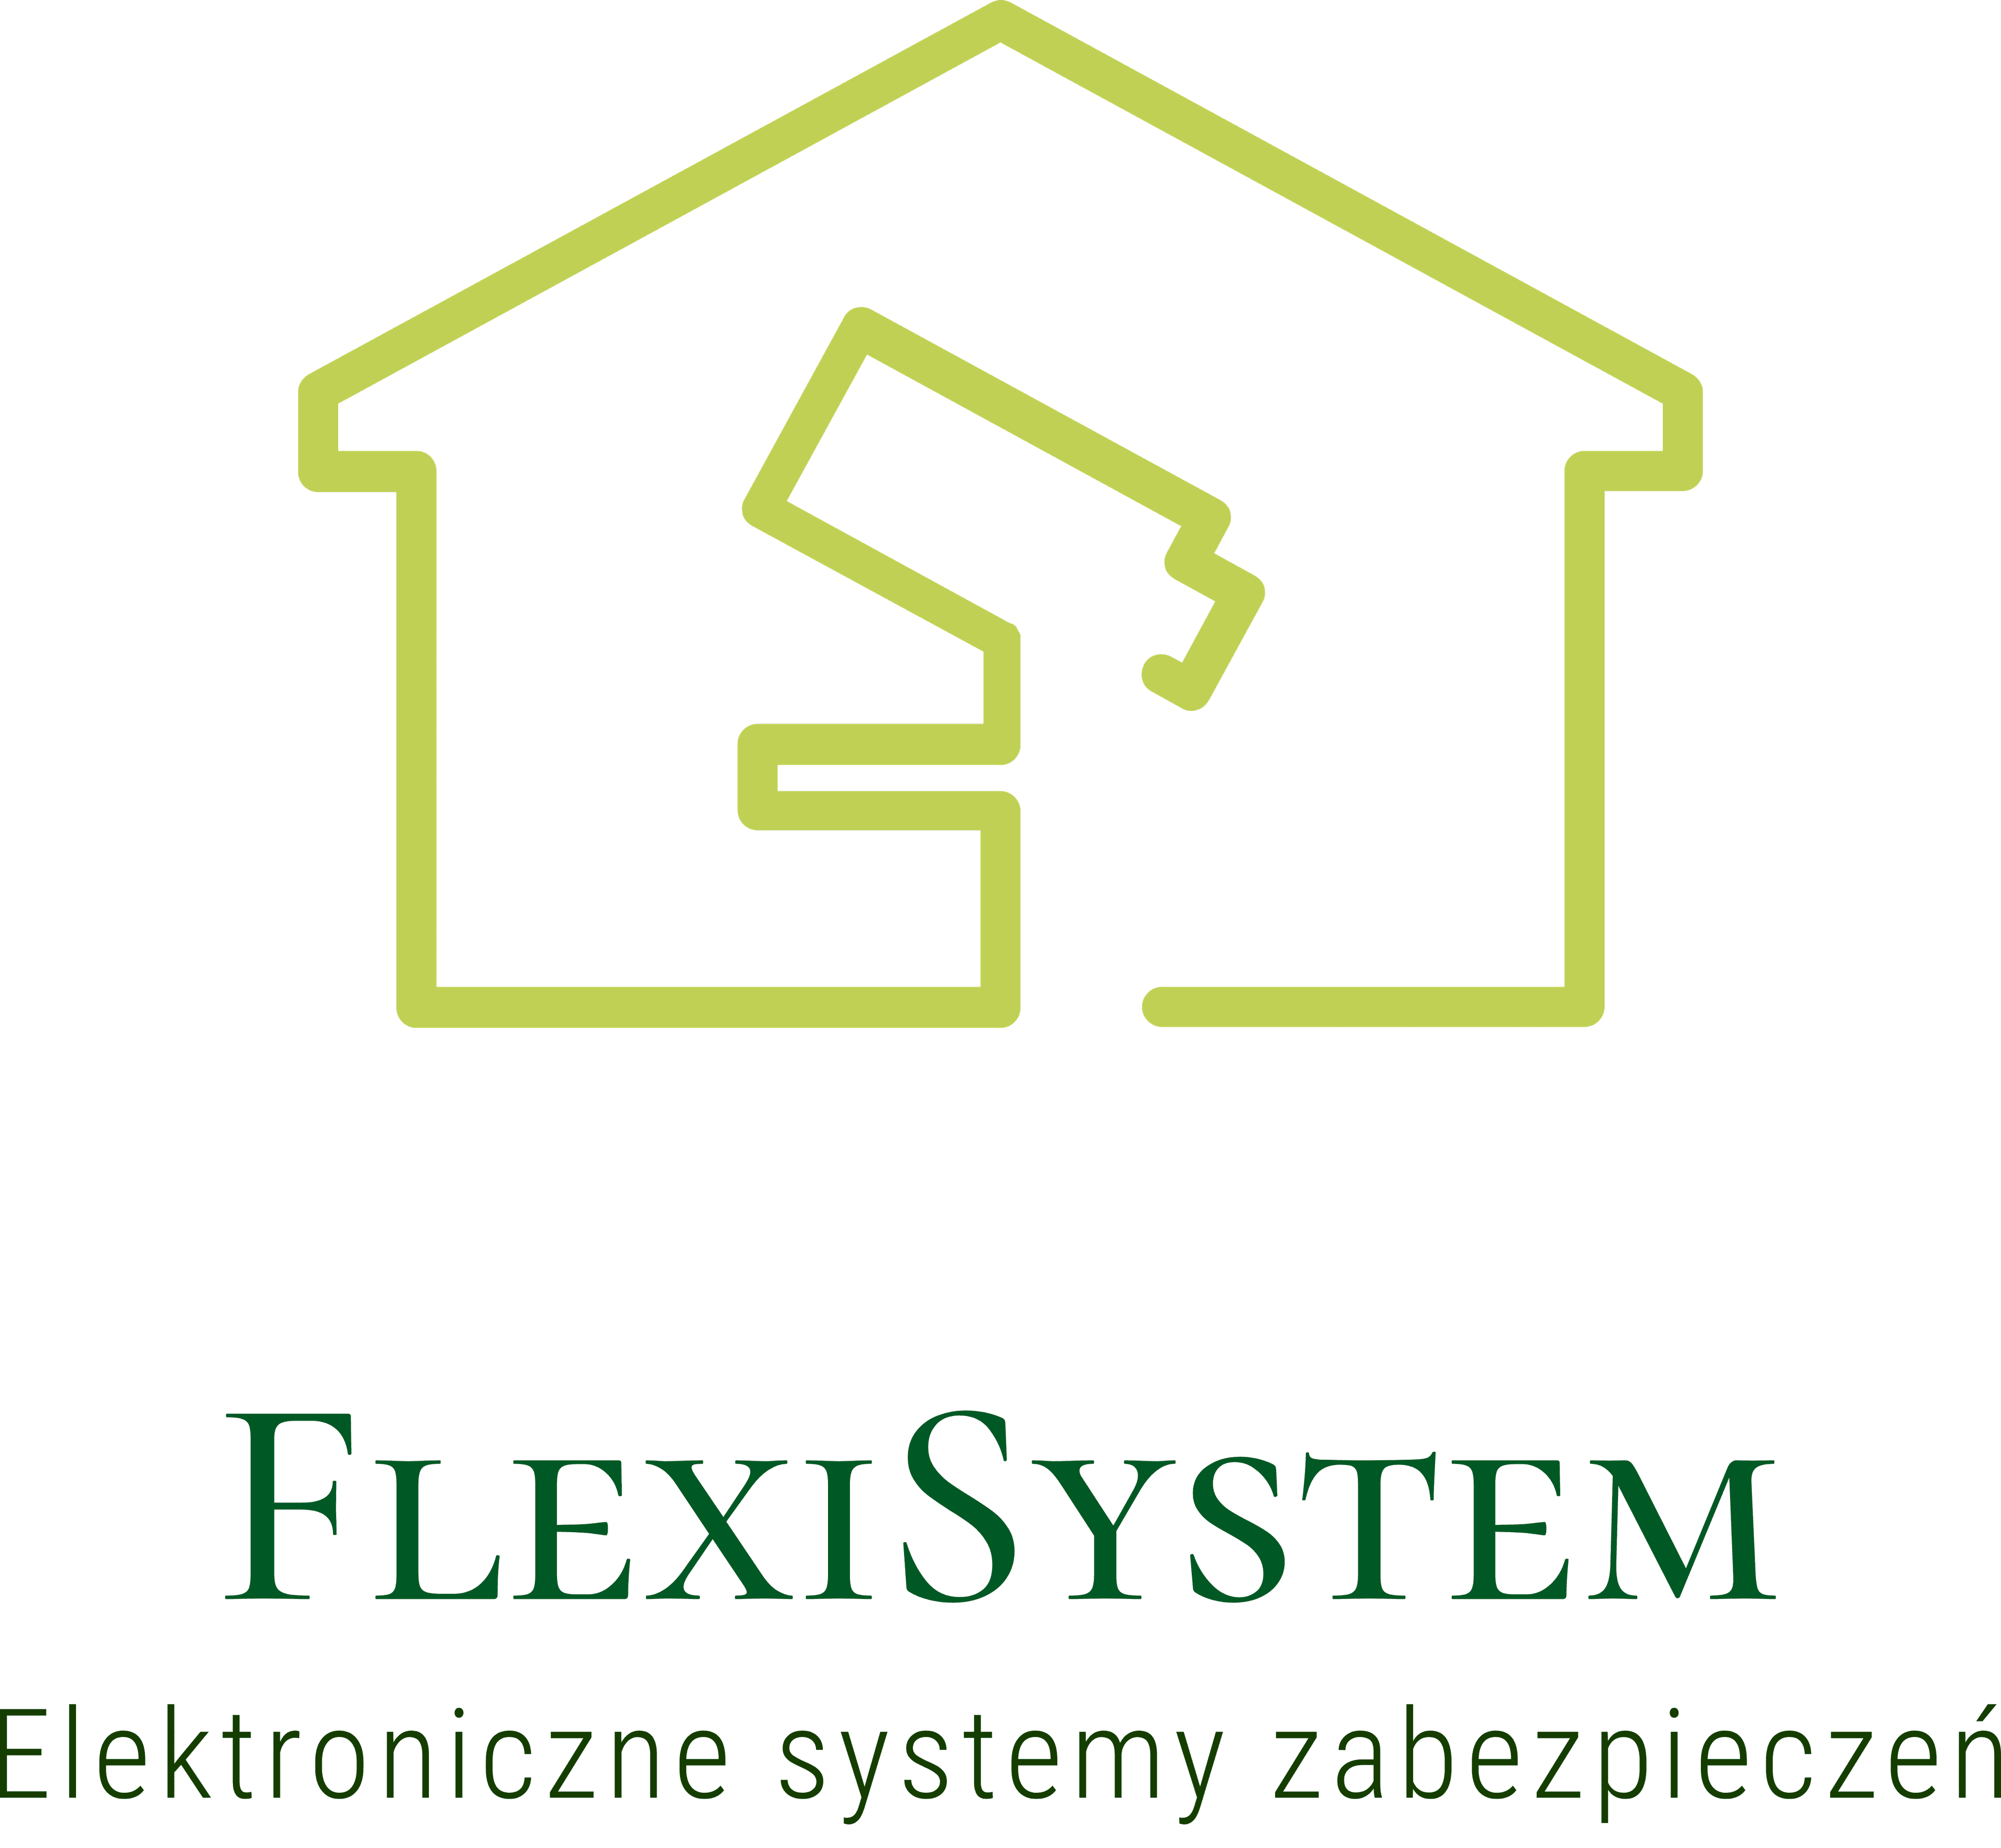 FLEXISYSTEM RAFAŁ PEŁKA ELEKTRONICZNE SYSTEMY ZABEZPIECZEŃ-logo